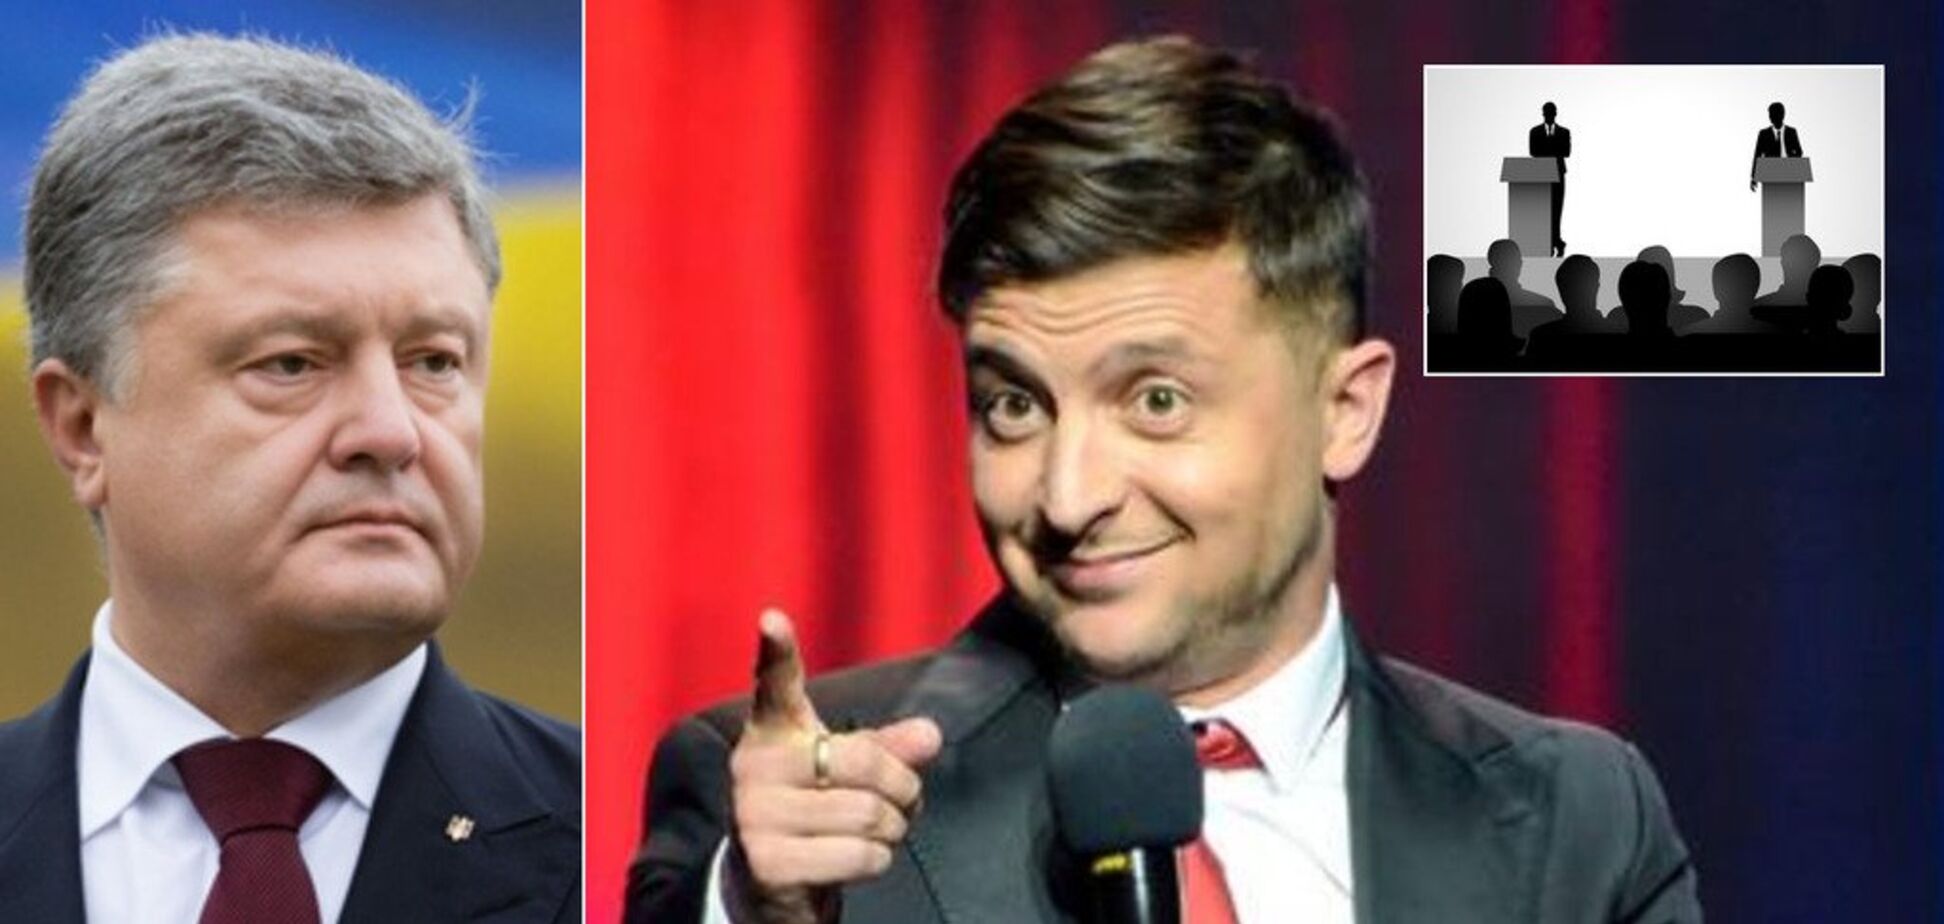 Дебаты Зеленский vs Порошенко: кому выгодно и кто победит